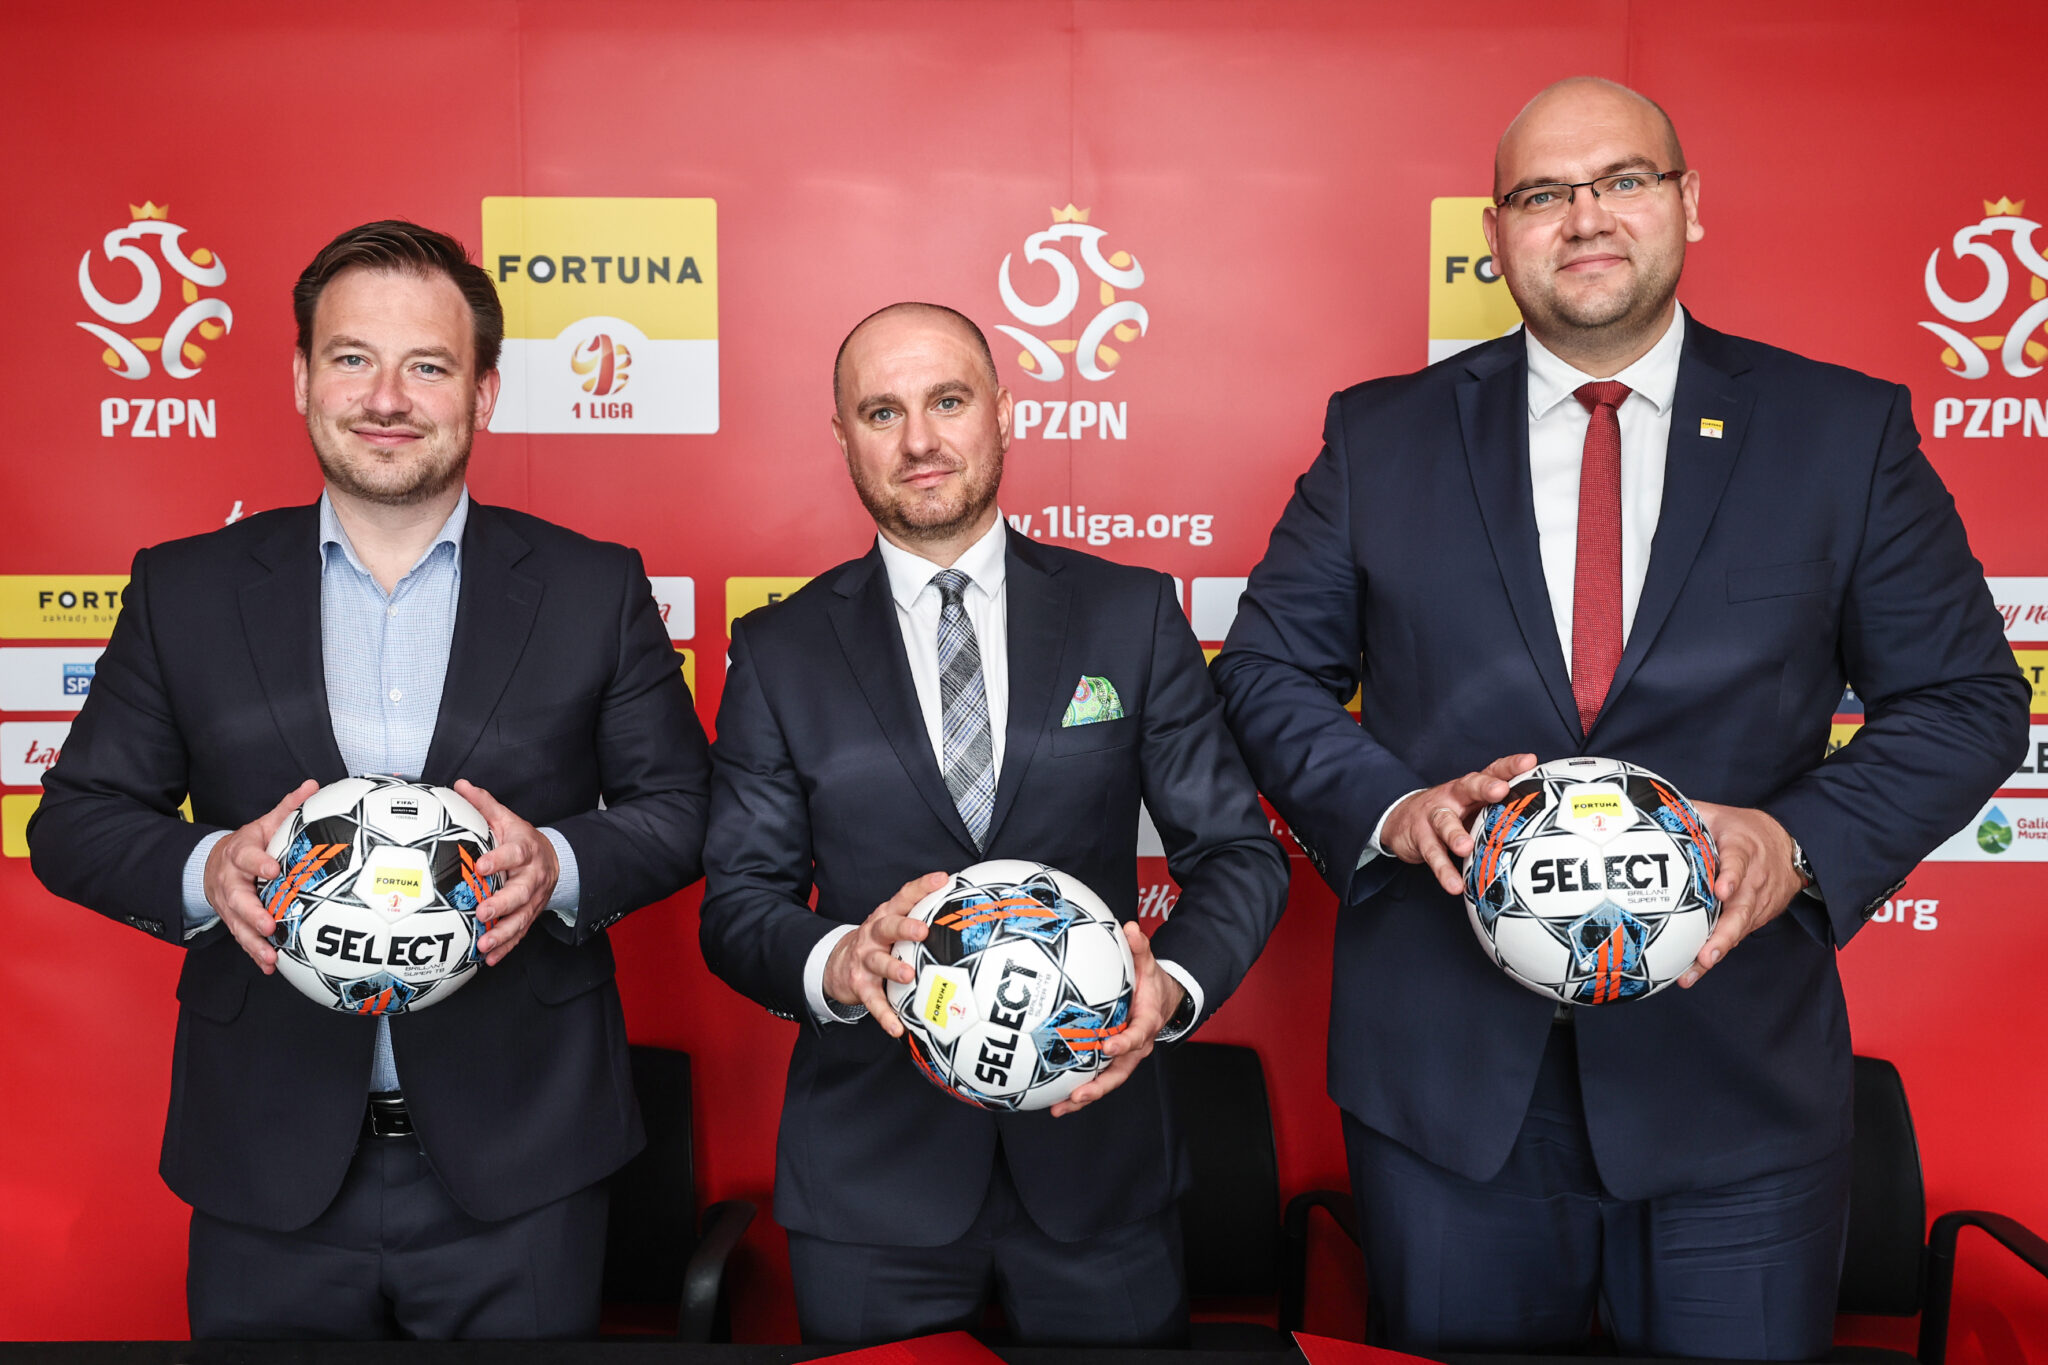 Galicjanka Oficjalnym Partnerem Fortuna 1 Liga